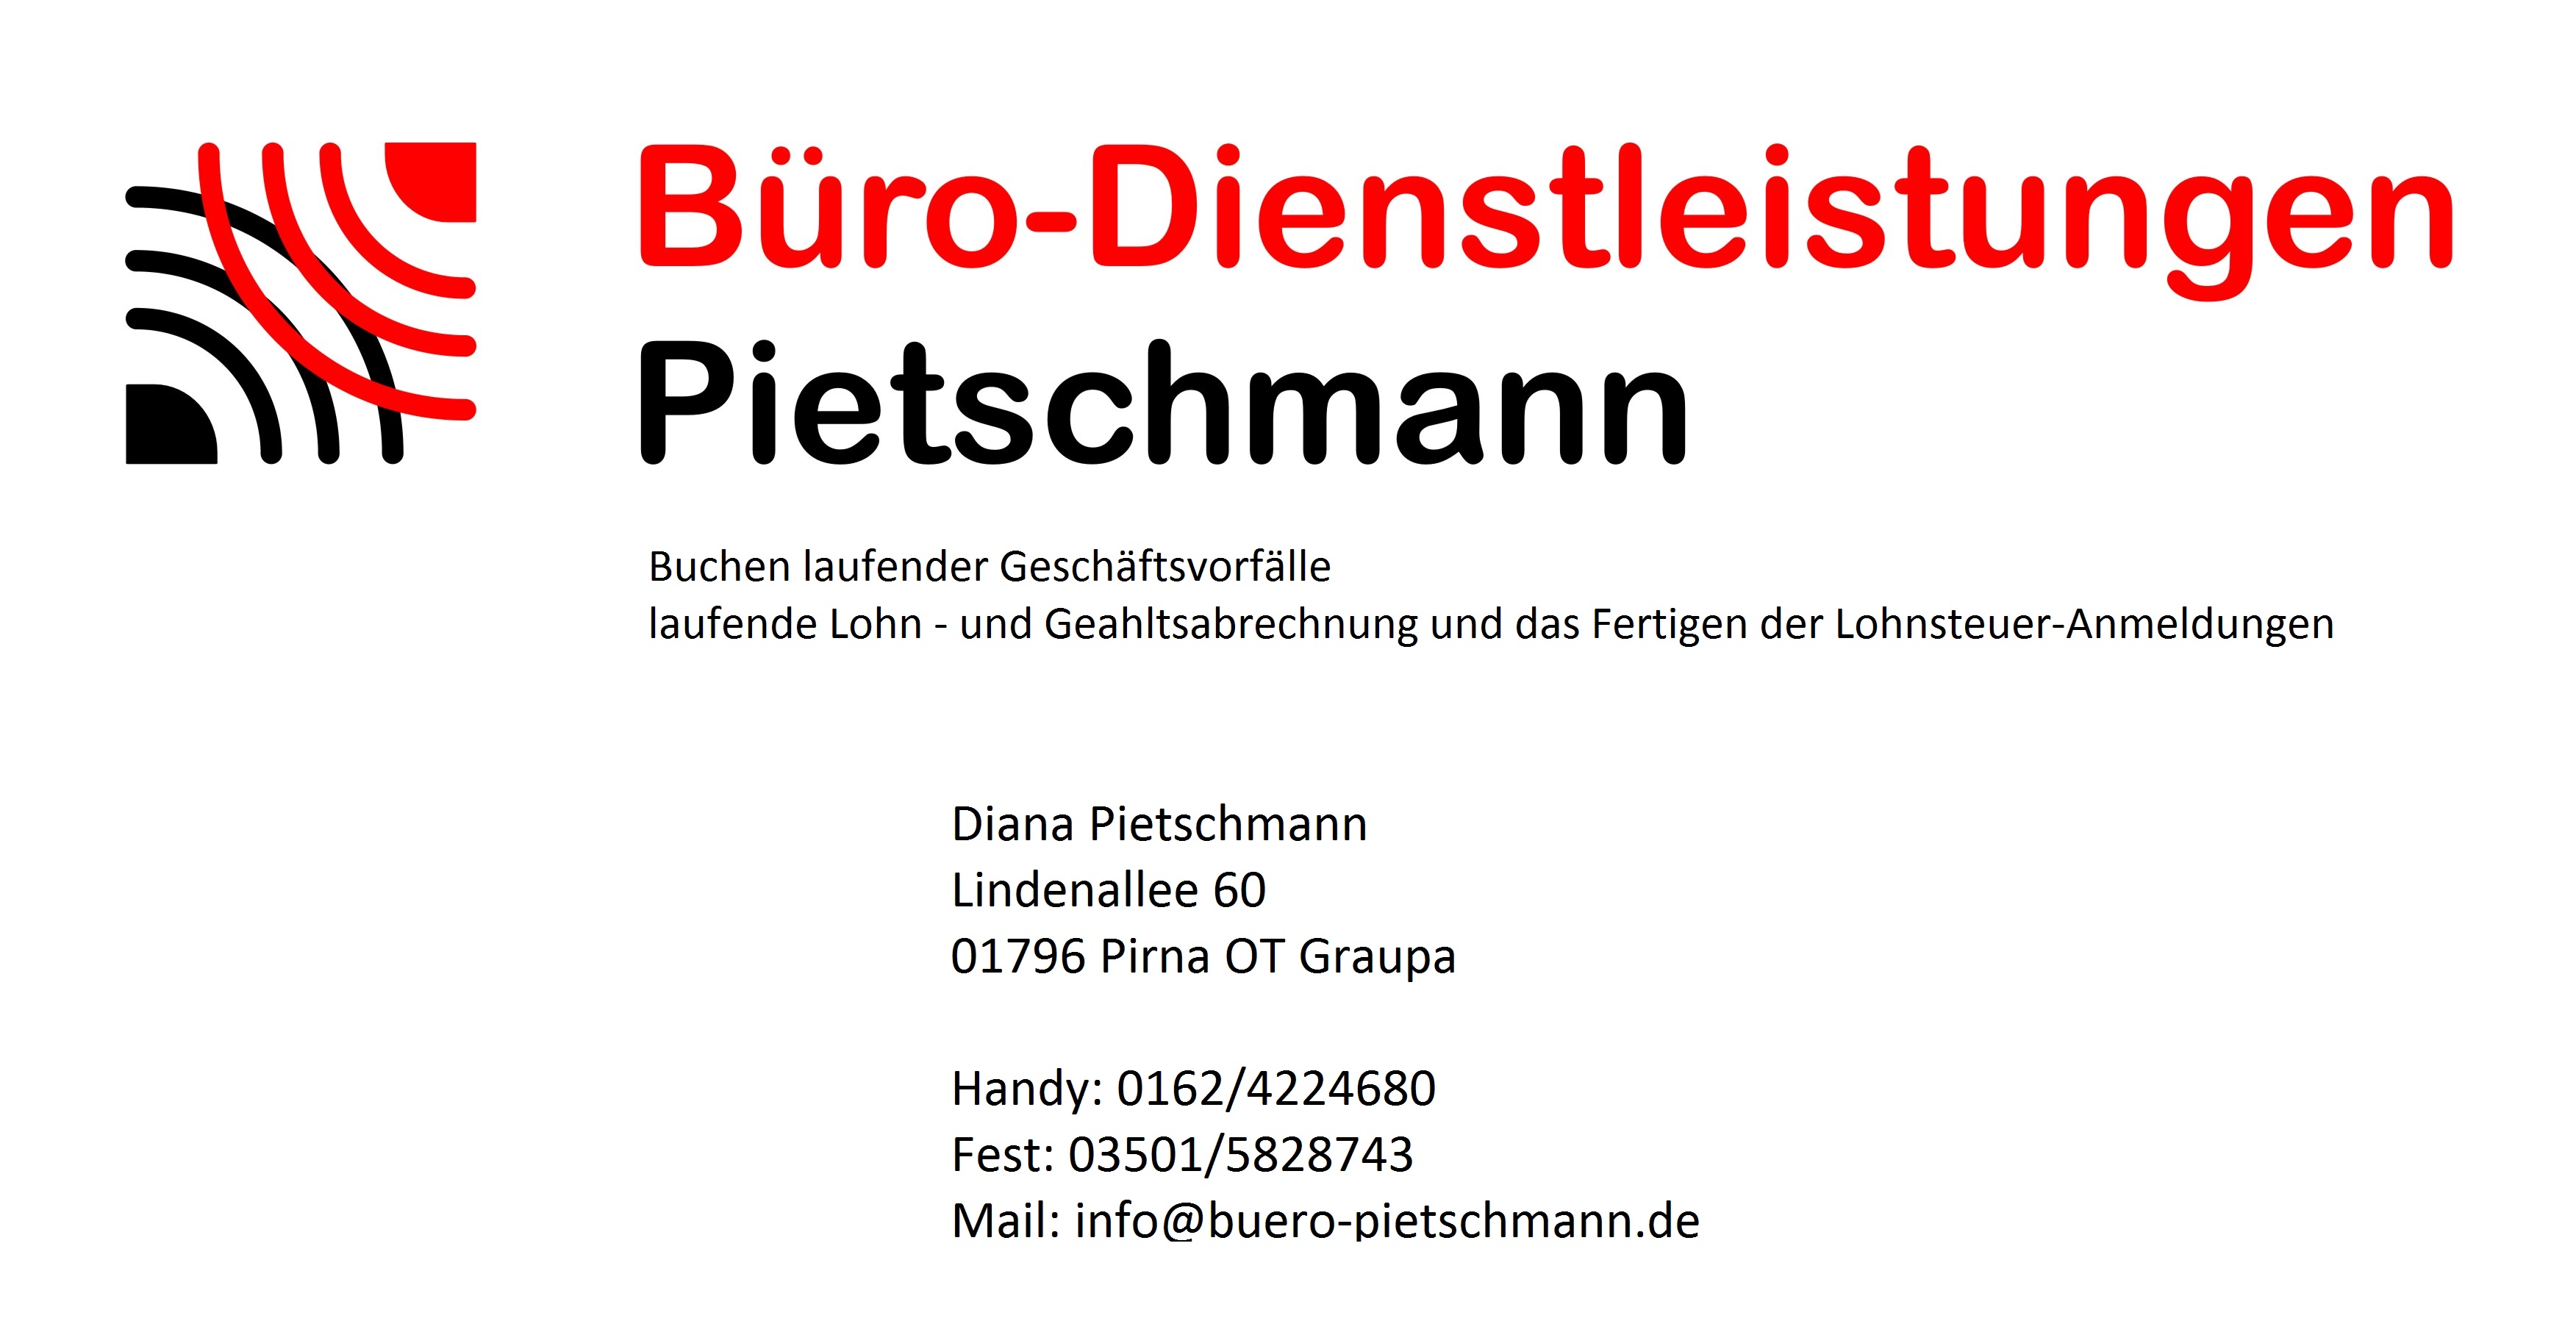 Diana Pietschmann - Buchhalterin in Pirna